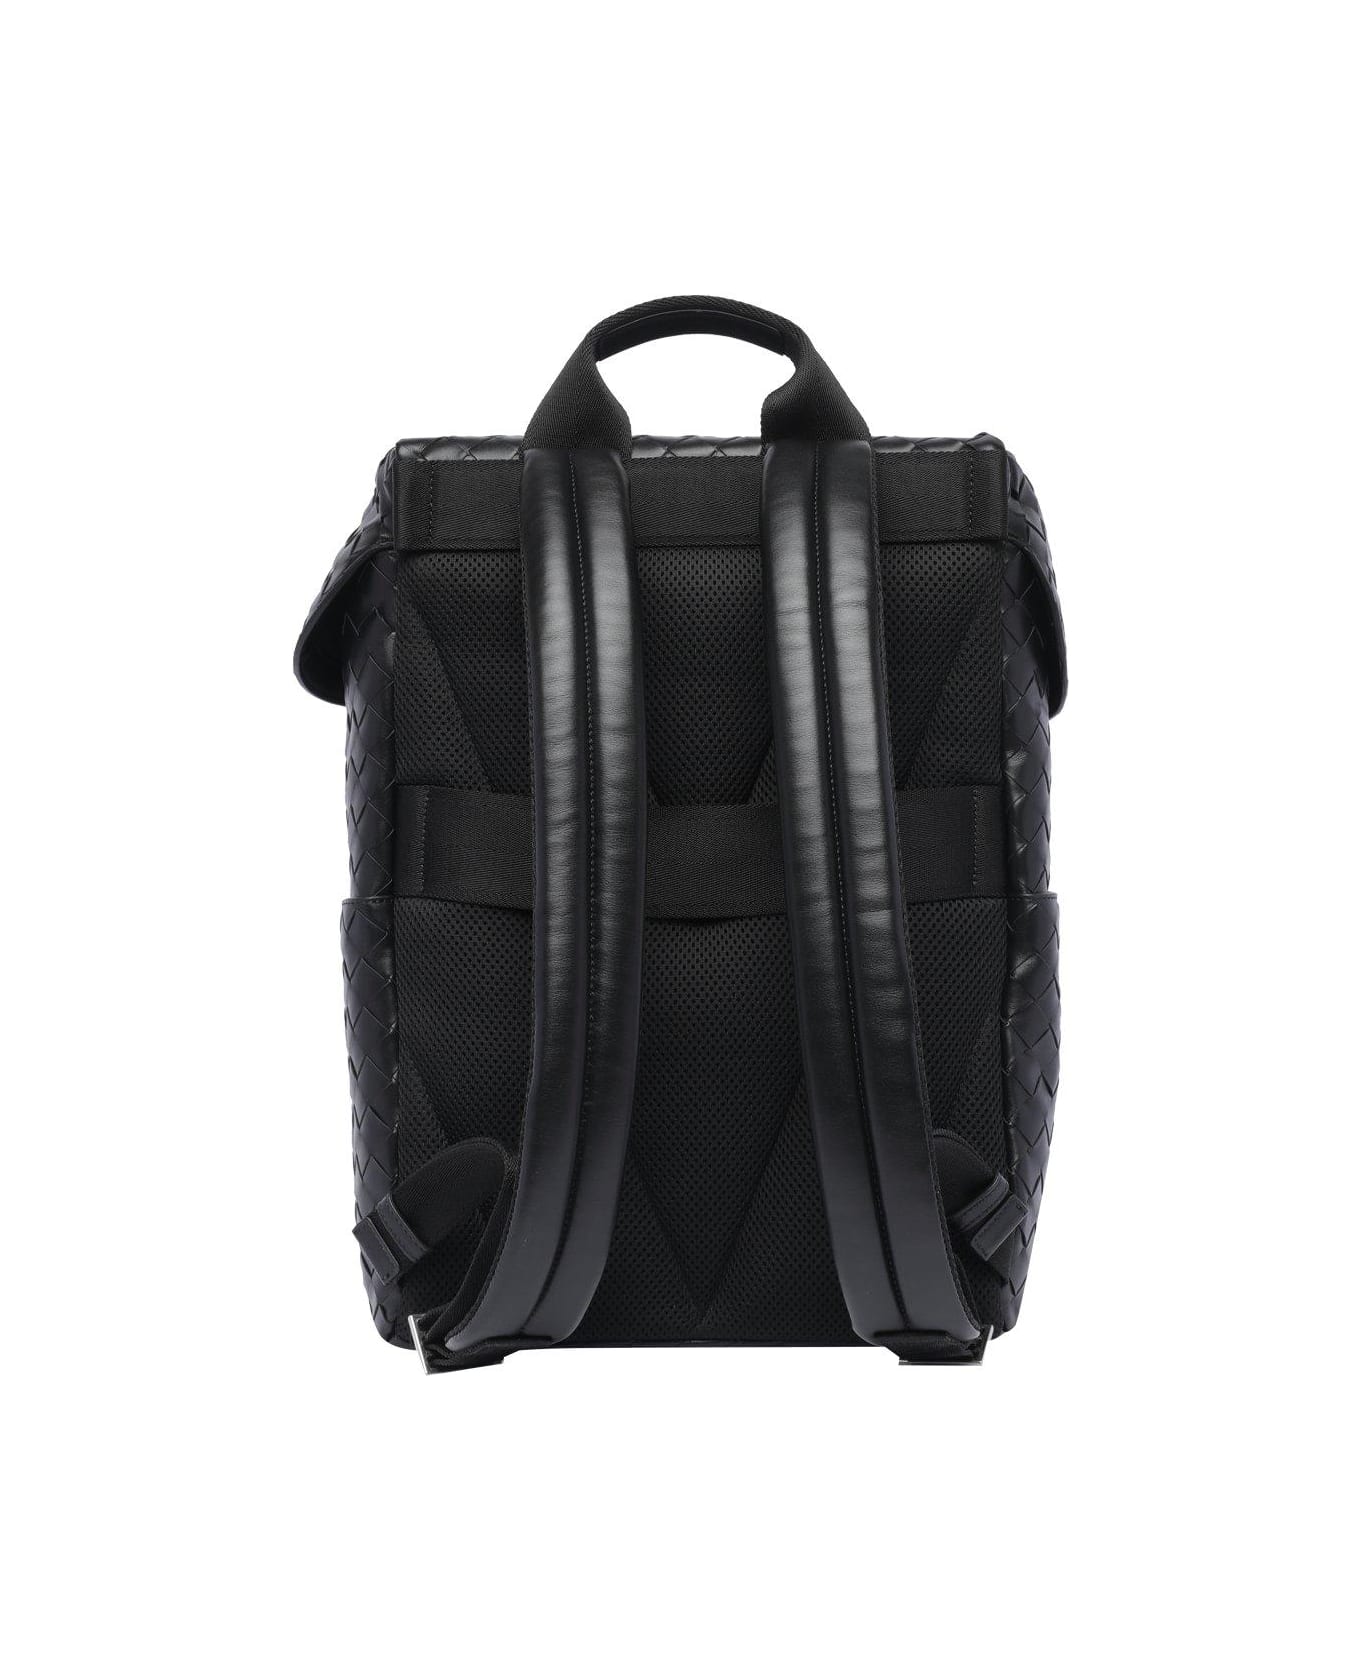 Bottega Veneta Intrecciato Flap Backpack - Black